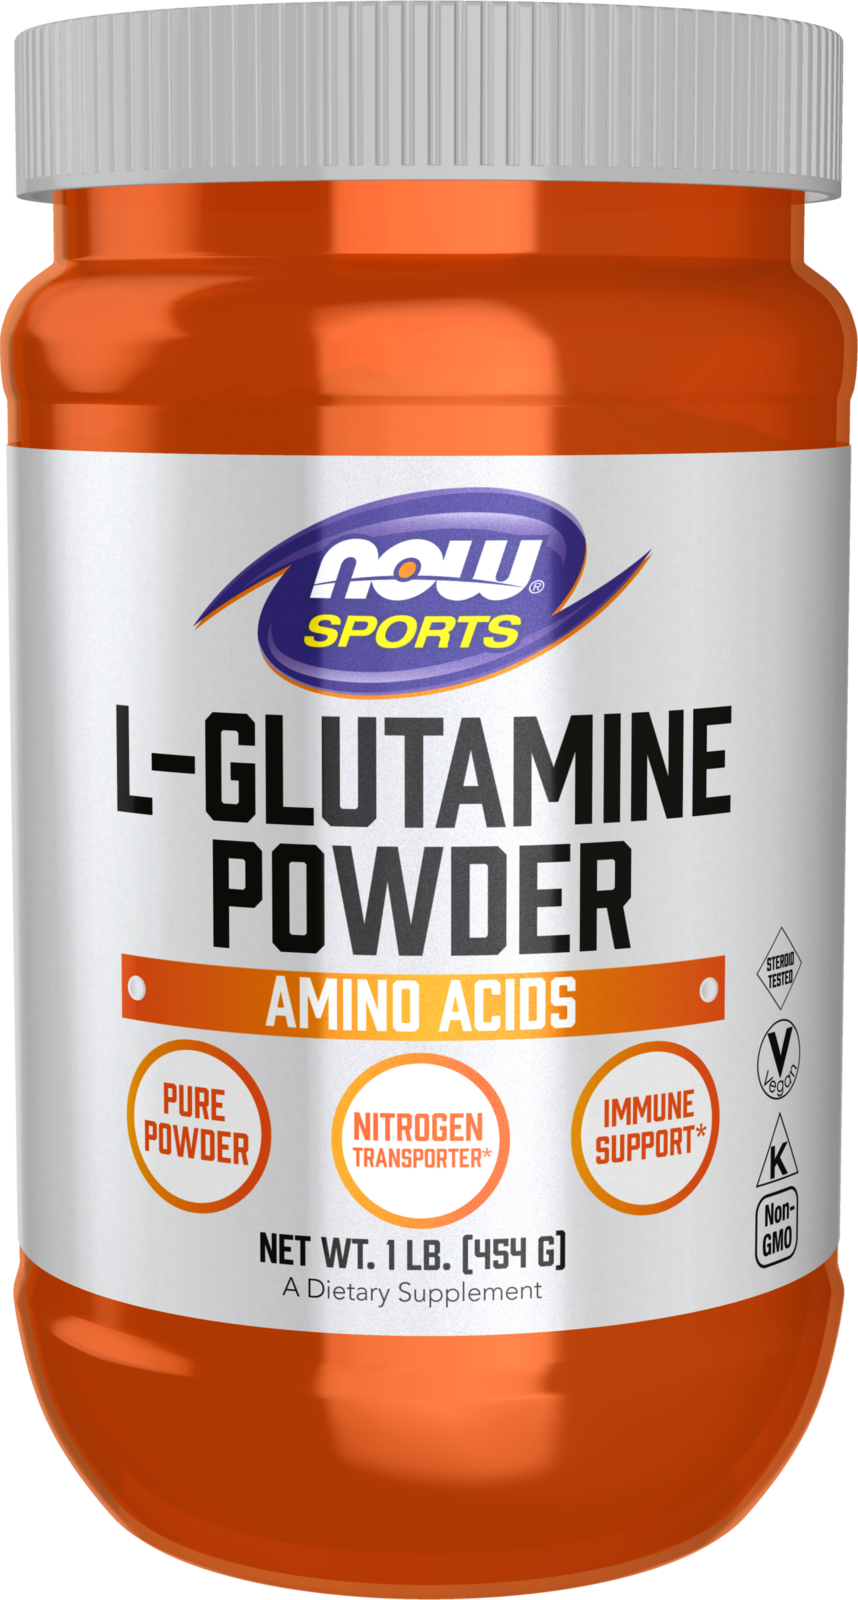 L-Glutamine Powder - 1 lb. Bottle Front